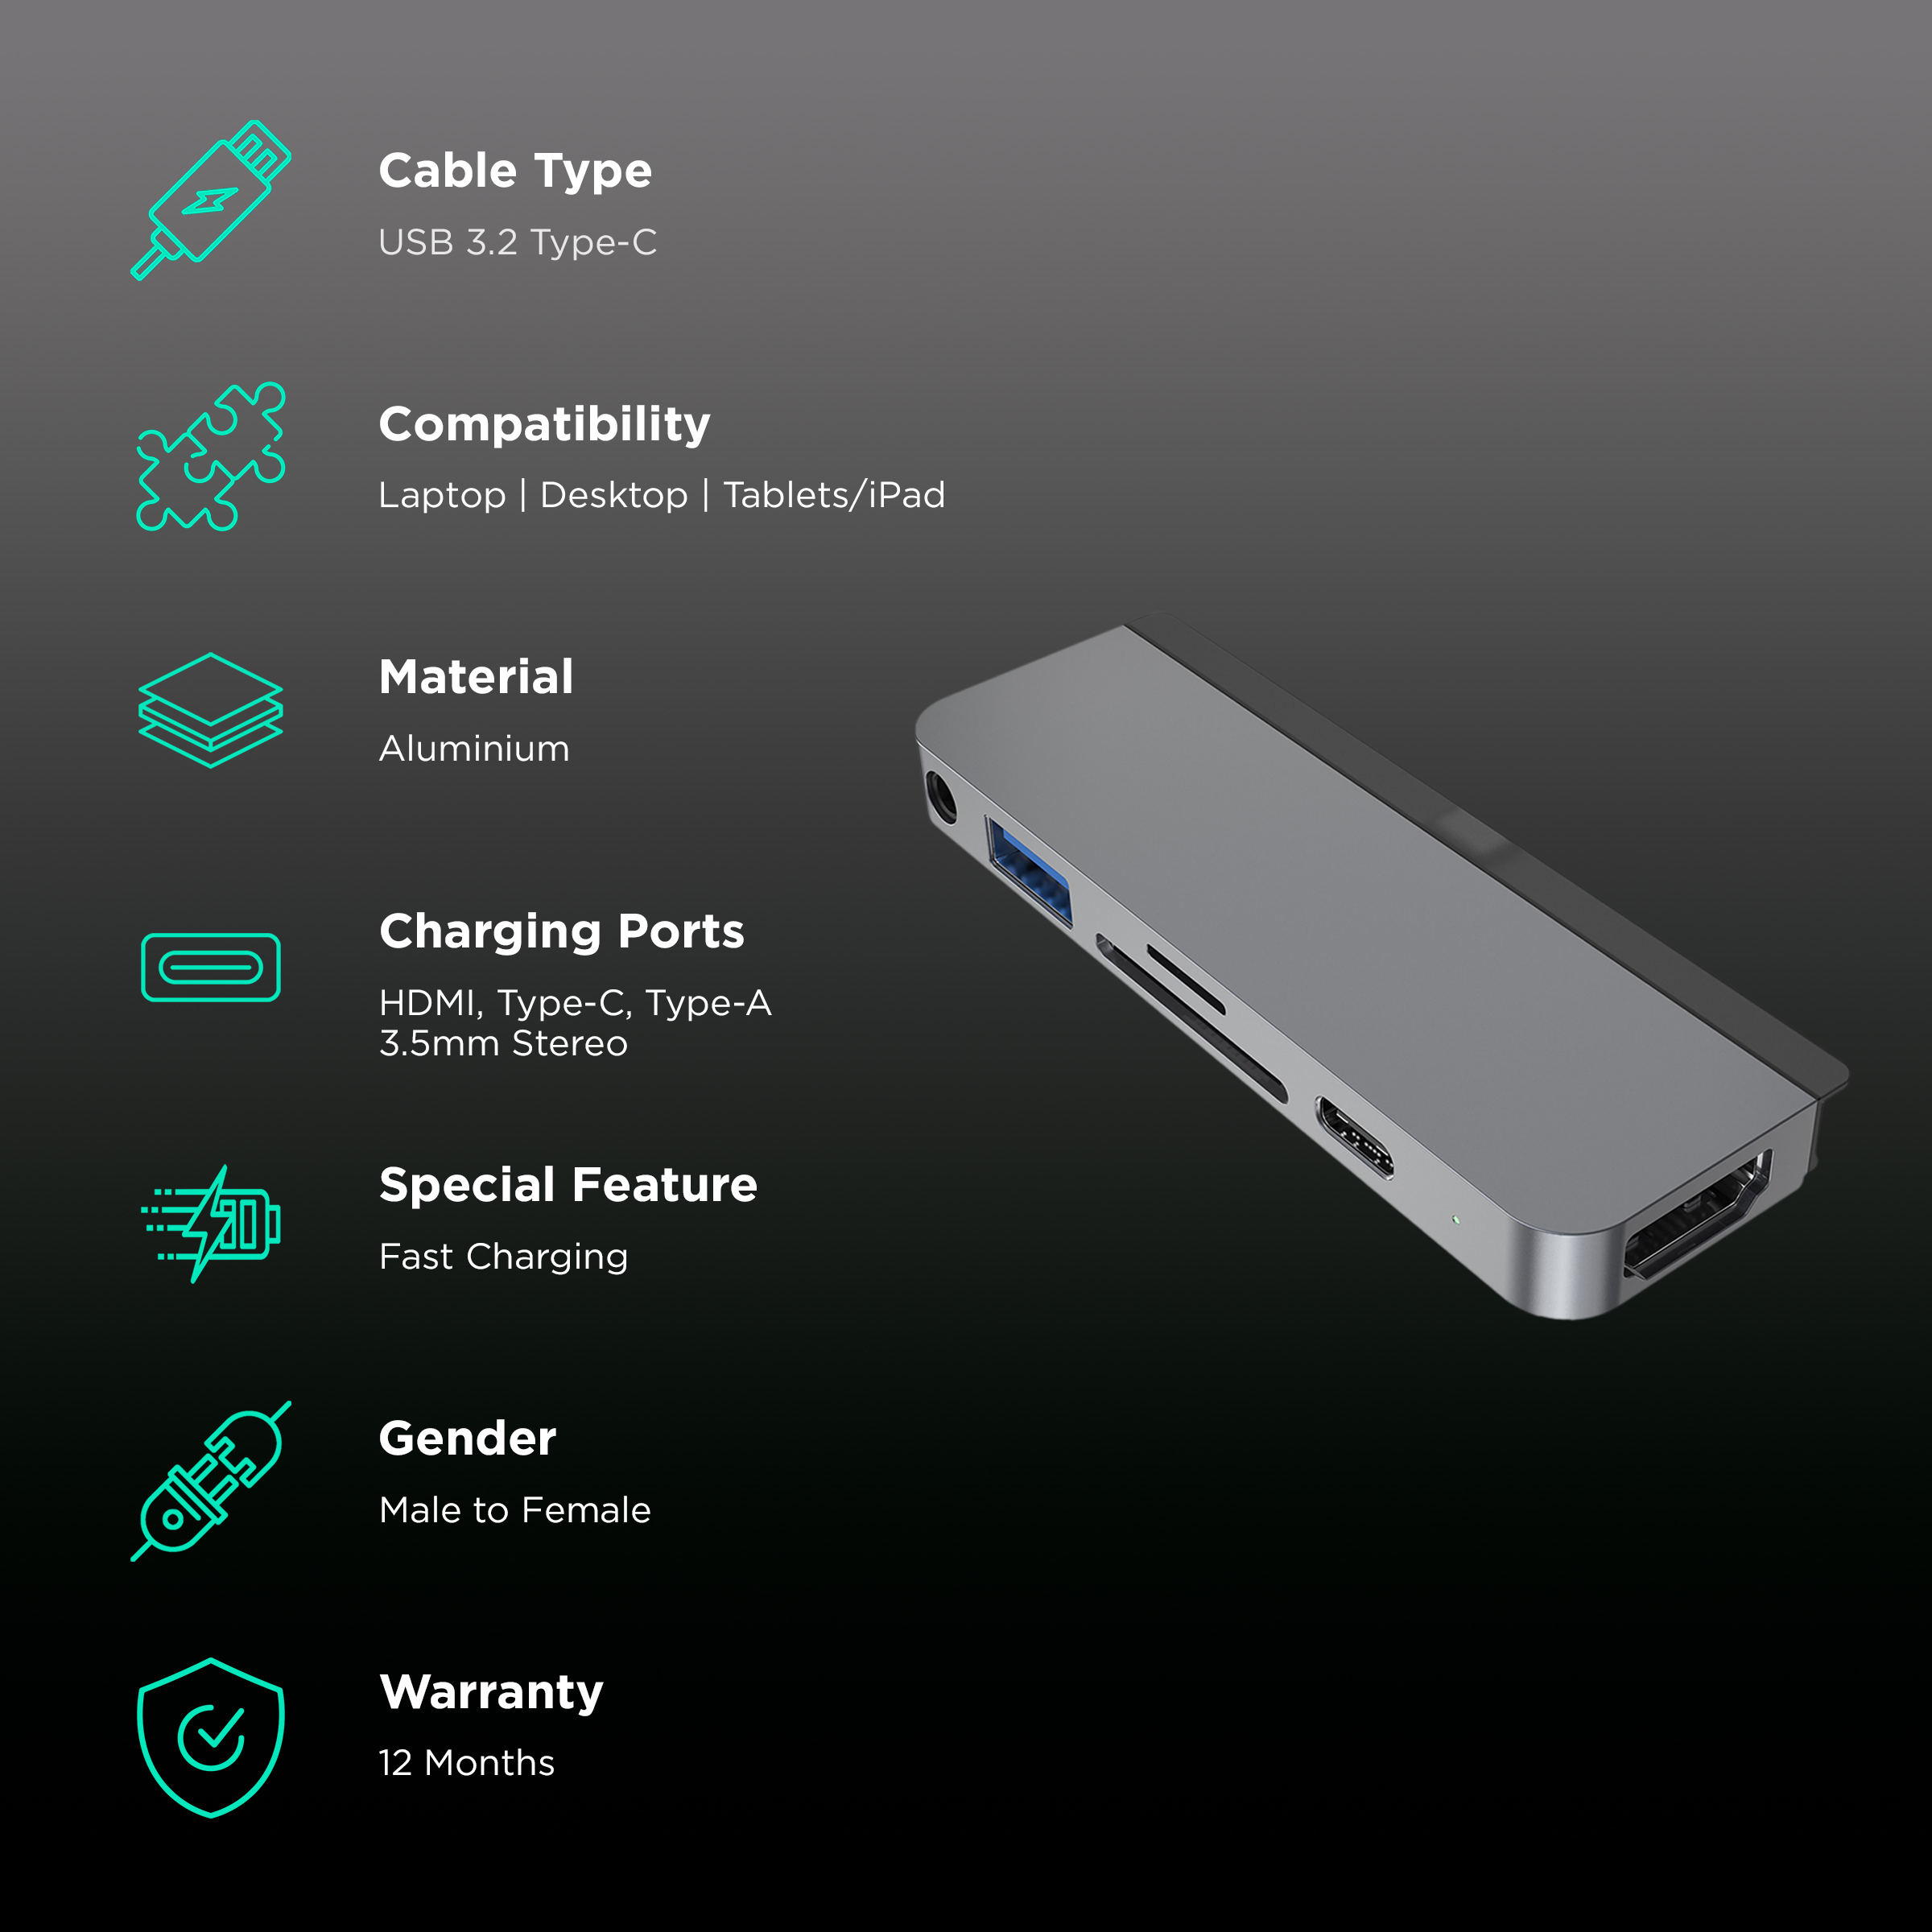 HyperDrive 6-in-1 USB-C Media Hub –